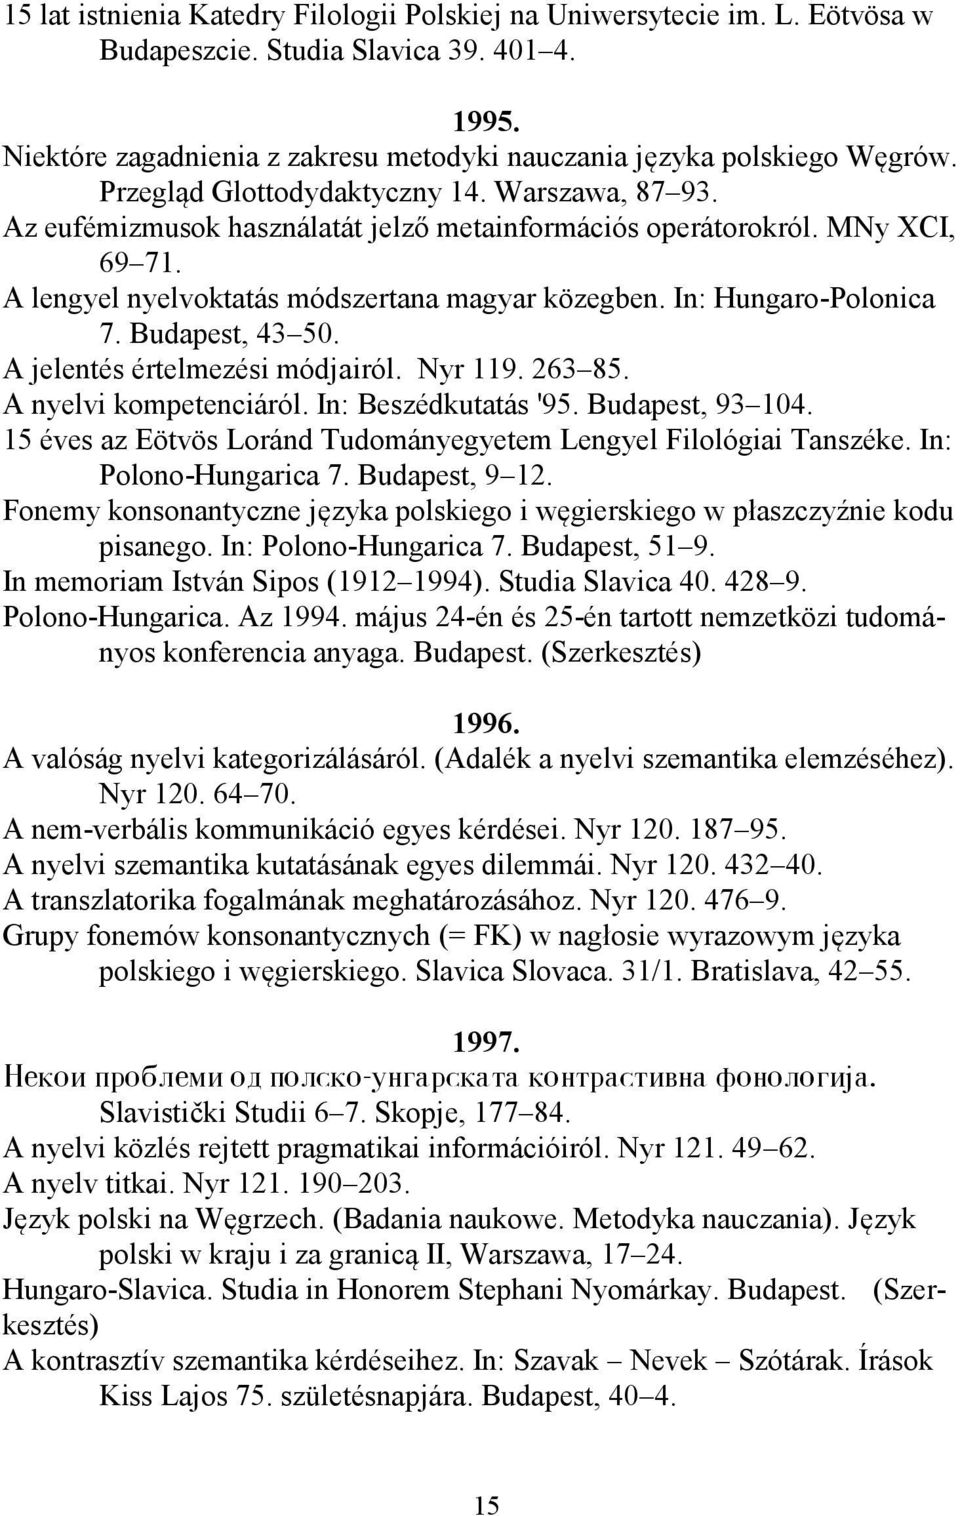 In: Hungaro-Polonica 7. Budapest, 43 50. A jelentés értelmezési módjairól. Nyr 119. 263 85. A nyelvi kompetenciáról. In: Beszédkutatás '95. Budapest, 93 104.